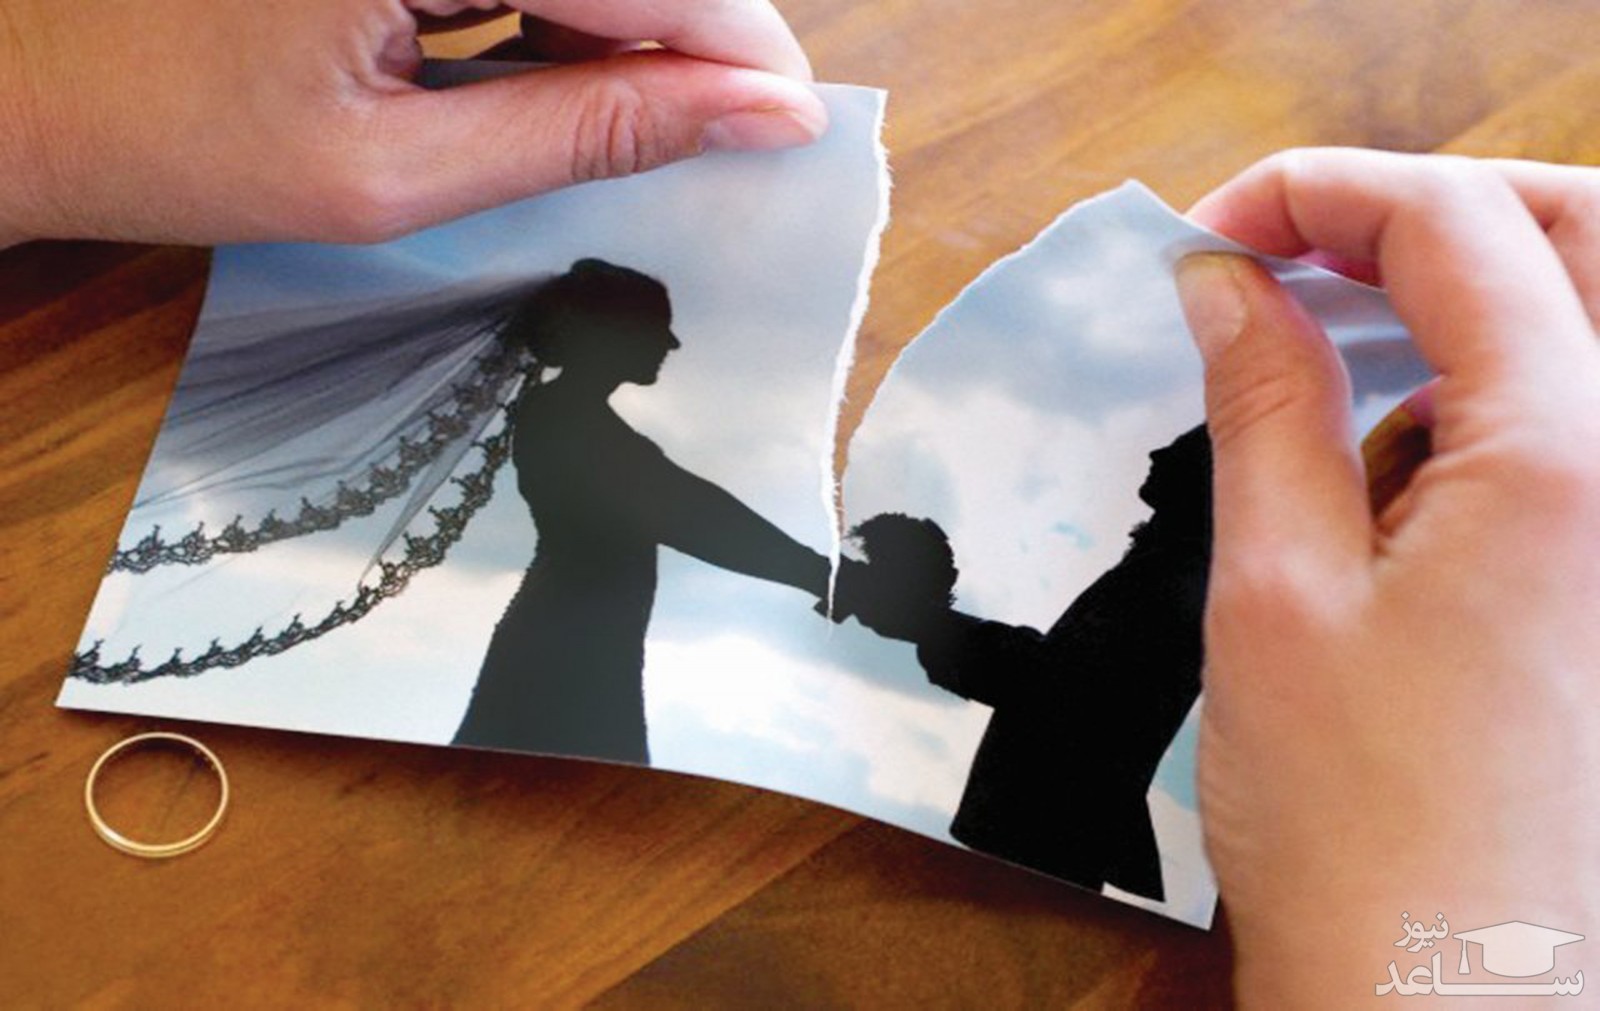 راهکارهایی برای رفع پشیمانی و عذاب وجدان بعد از طلاق